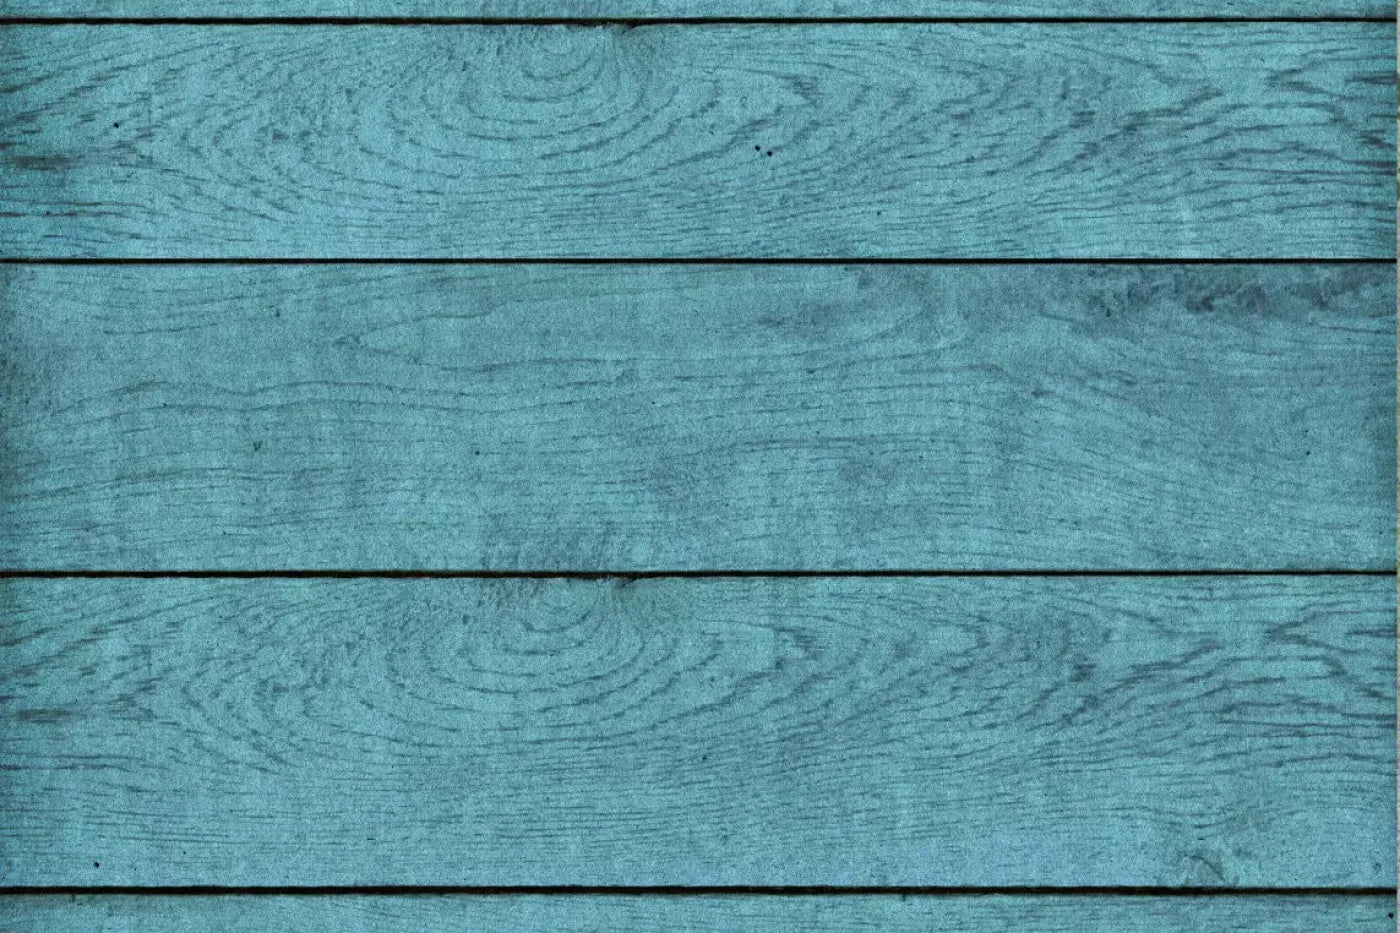 Boarded Blue 5X4 Rubbermat Floor ( 60 X 48 Inch ) Backdrop